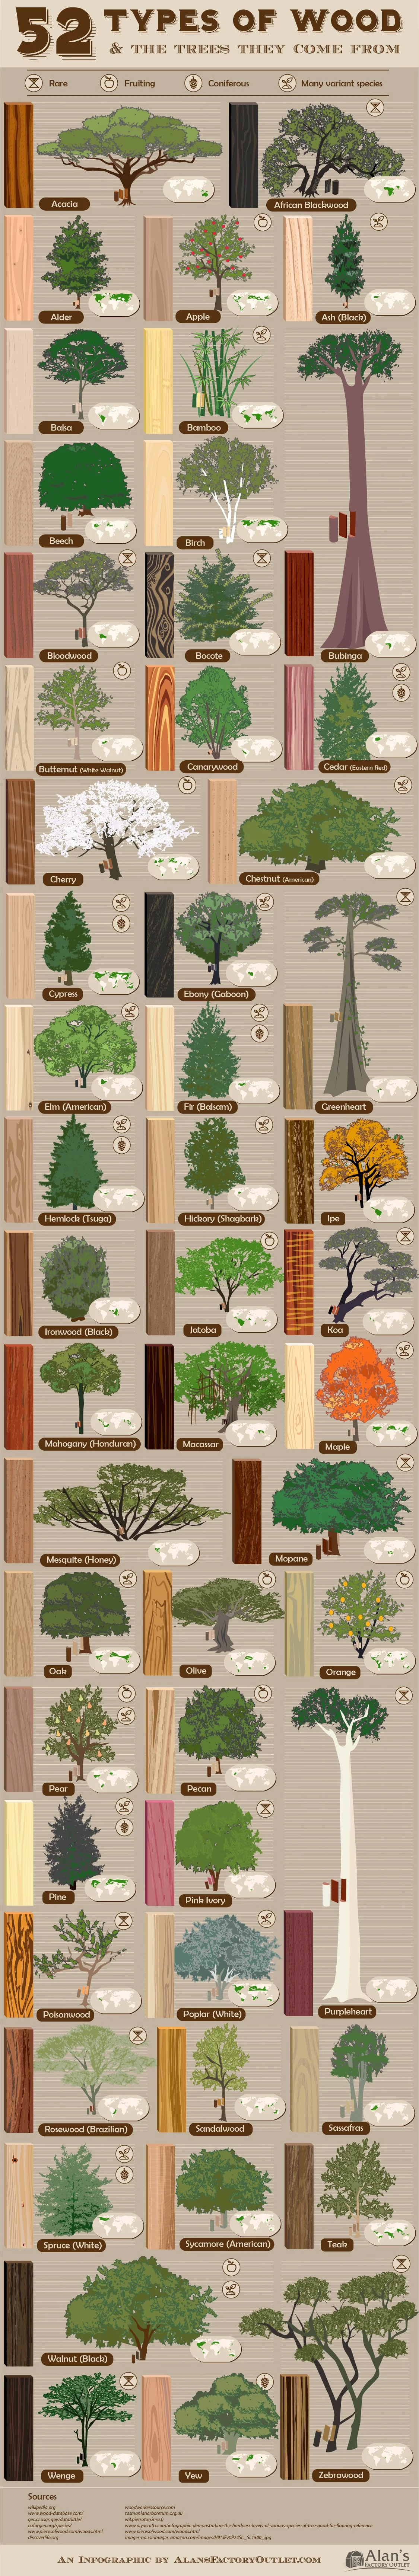 Houtwijzer: 52 houtsoorten en waar ze vandaan komen